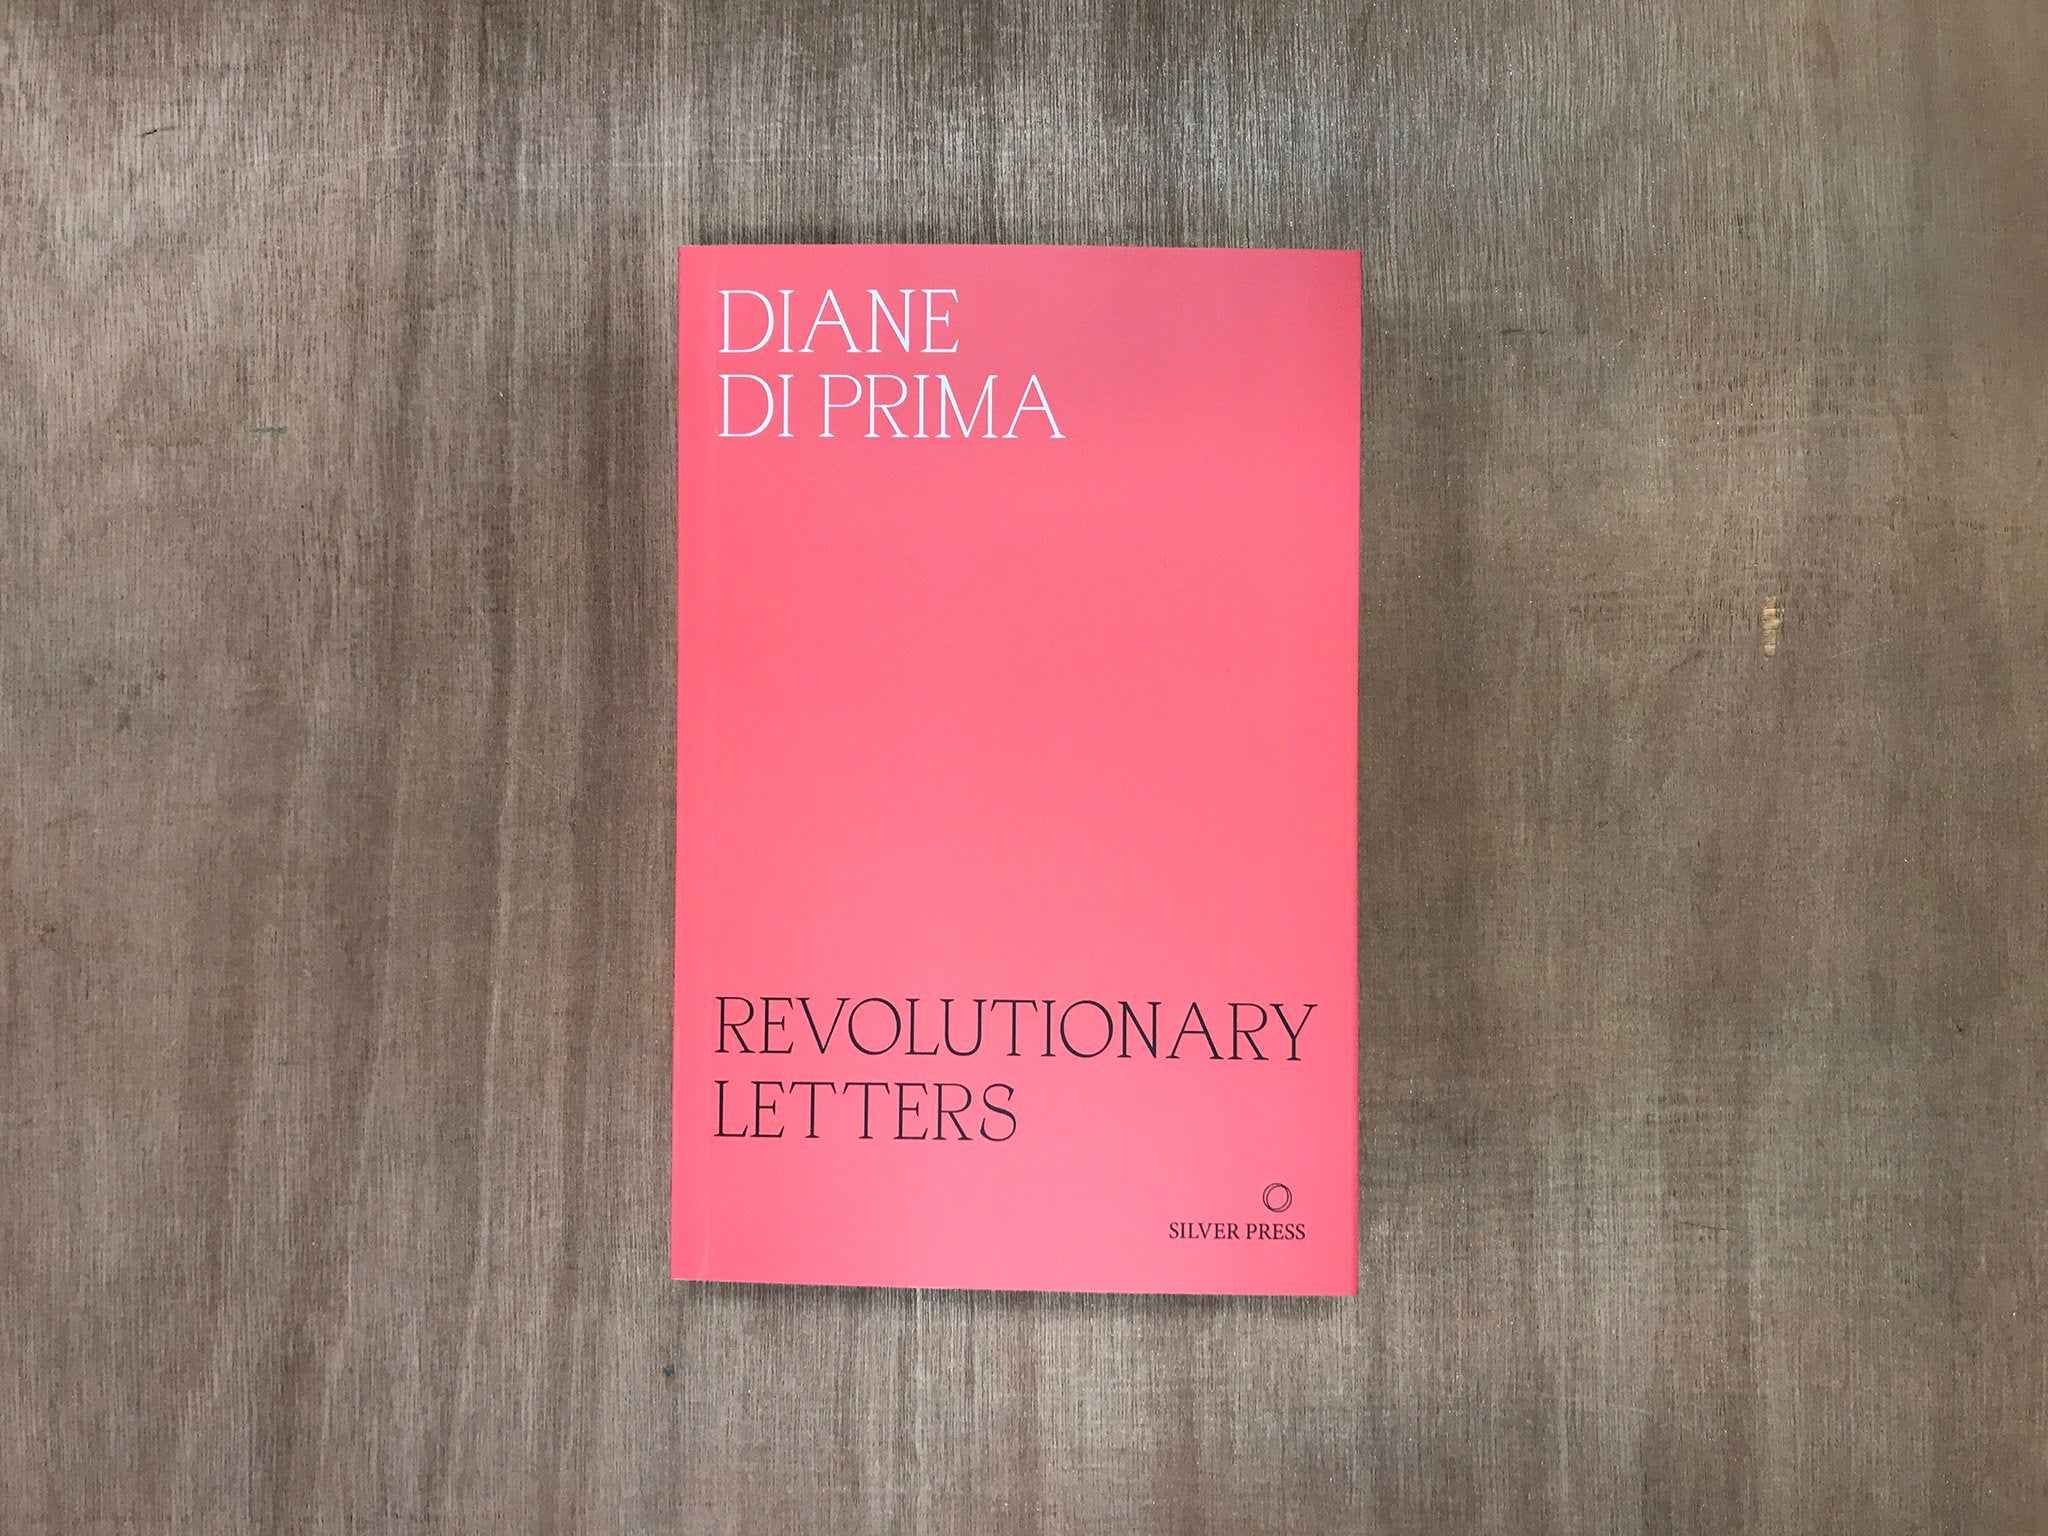 REVOLUTIONARY LETTERS by Diane Di Prima